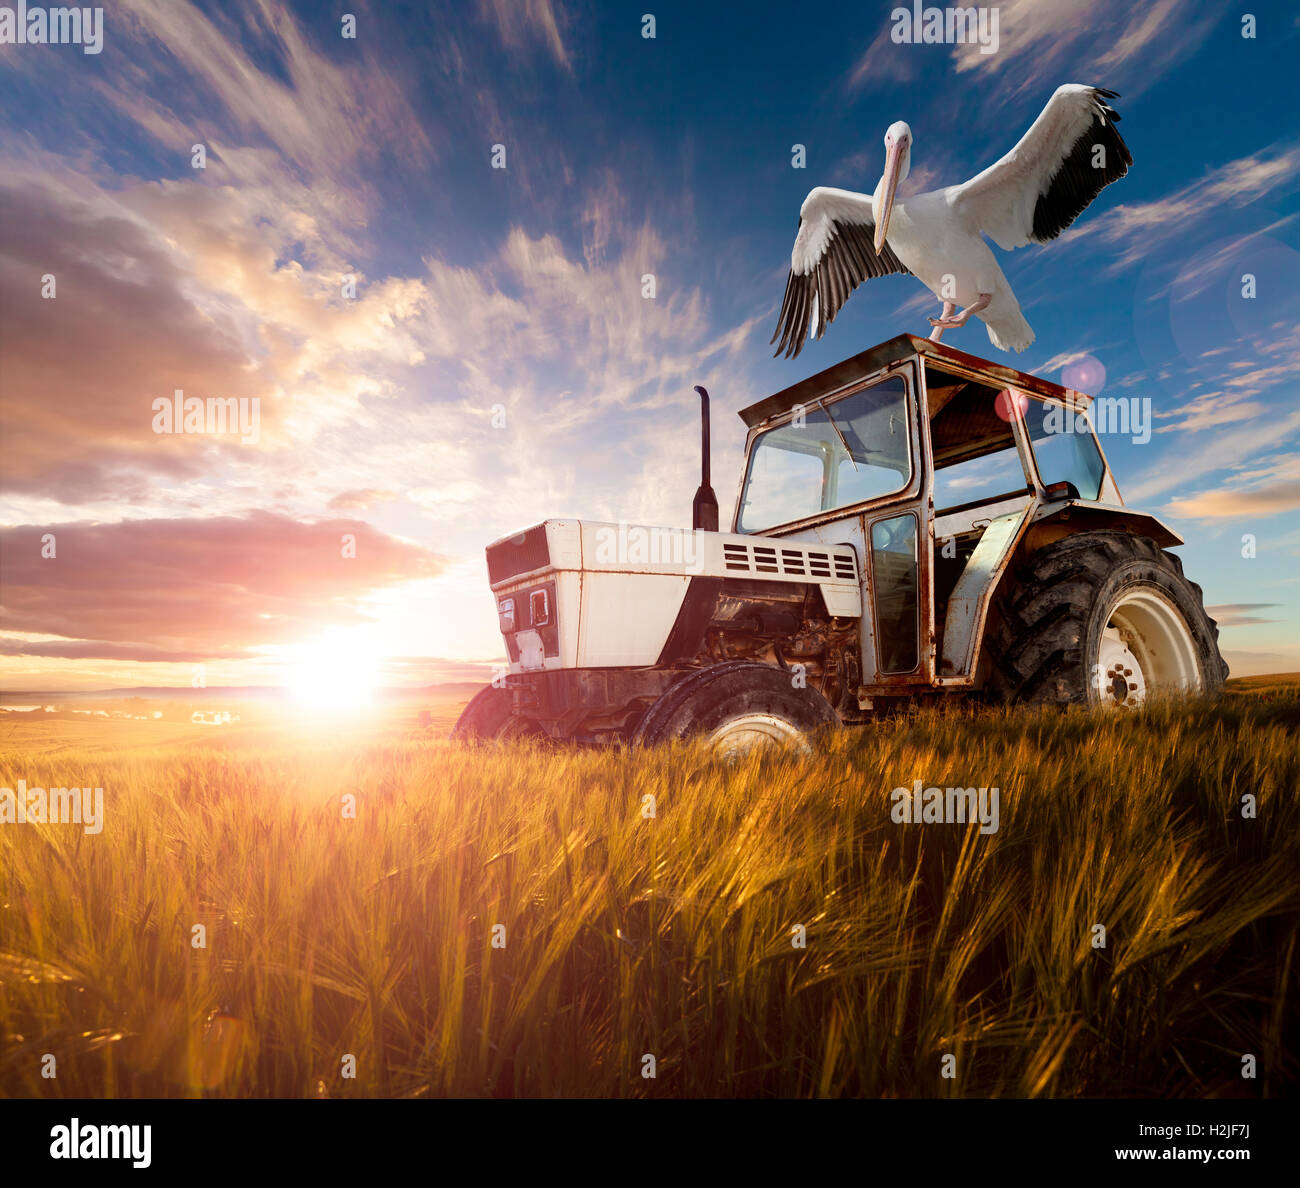 Los campos de trigo, aves exóticas y tractor.Concepto de Viaje Rural Foto de stock